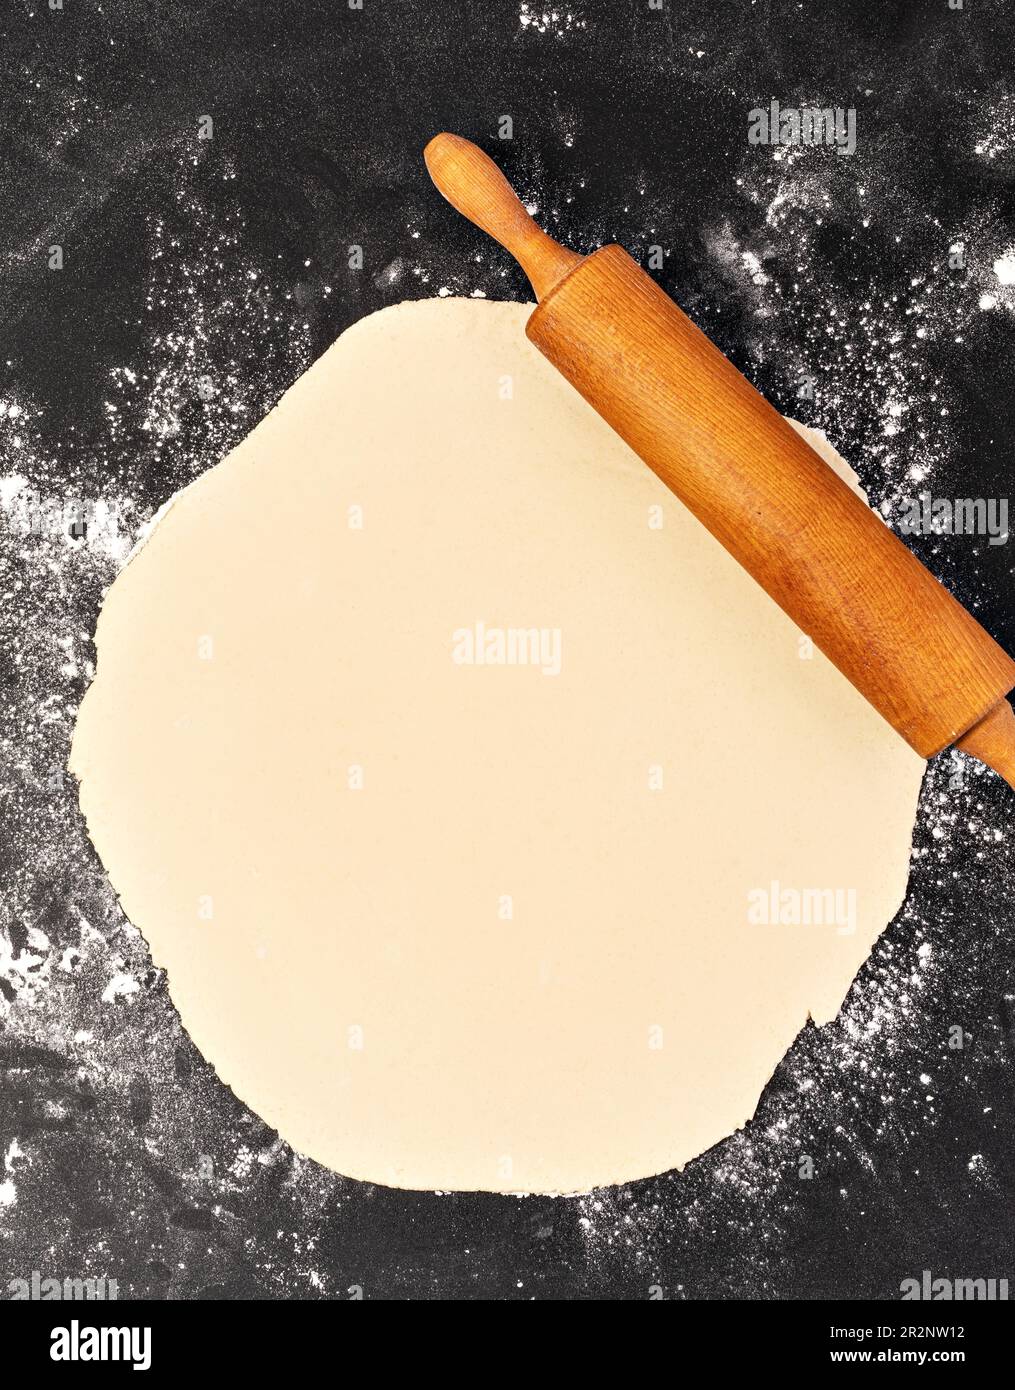 Préparation de la pâte. Le rollPIN avec de la farine sur un fond sombre. Espace libre pour le texte Banque D'Images